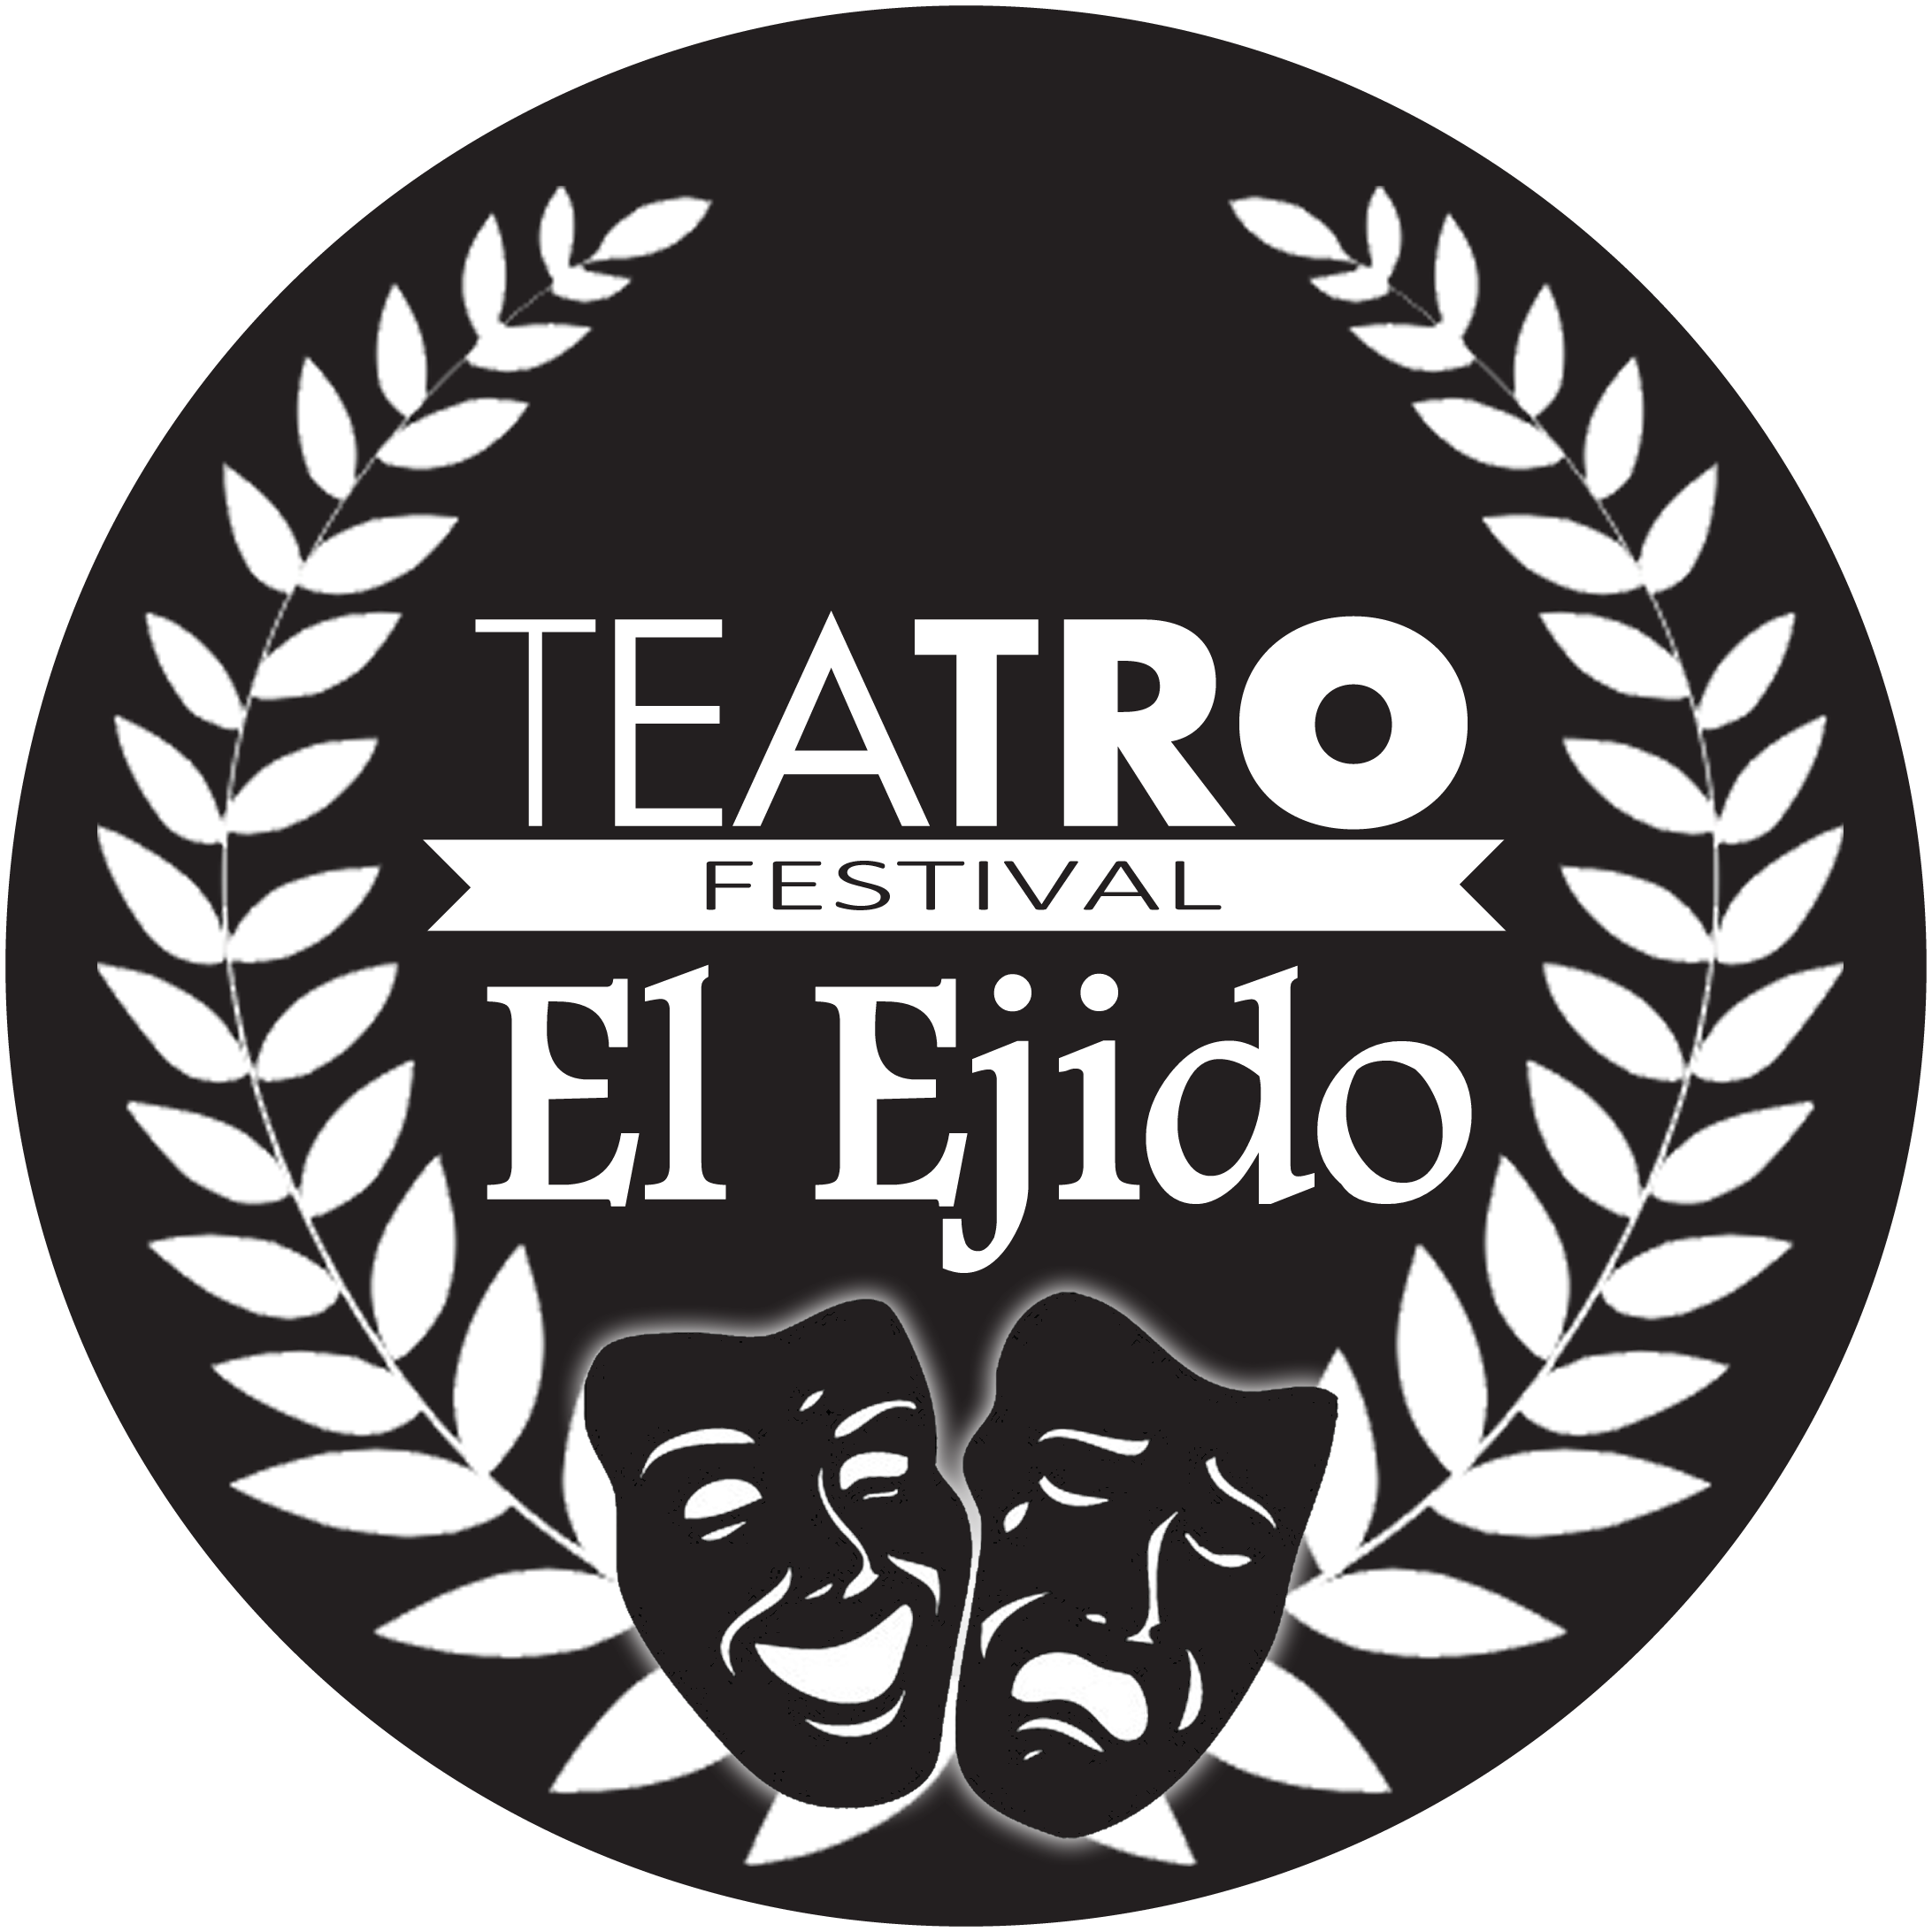 Festival de Teatro El Ejido